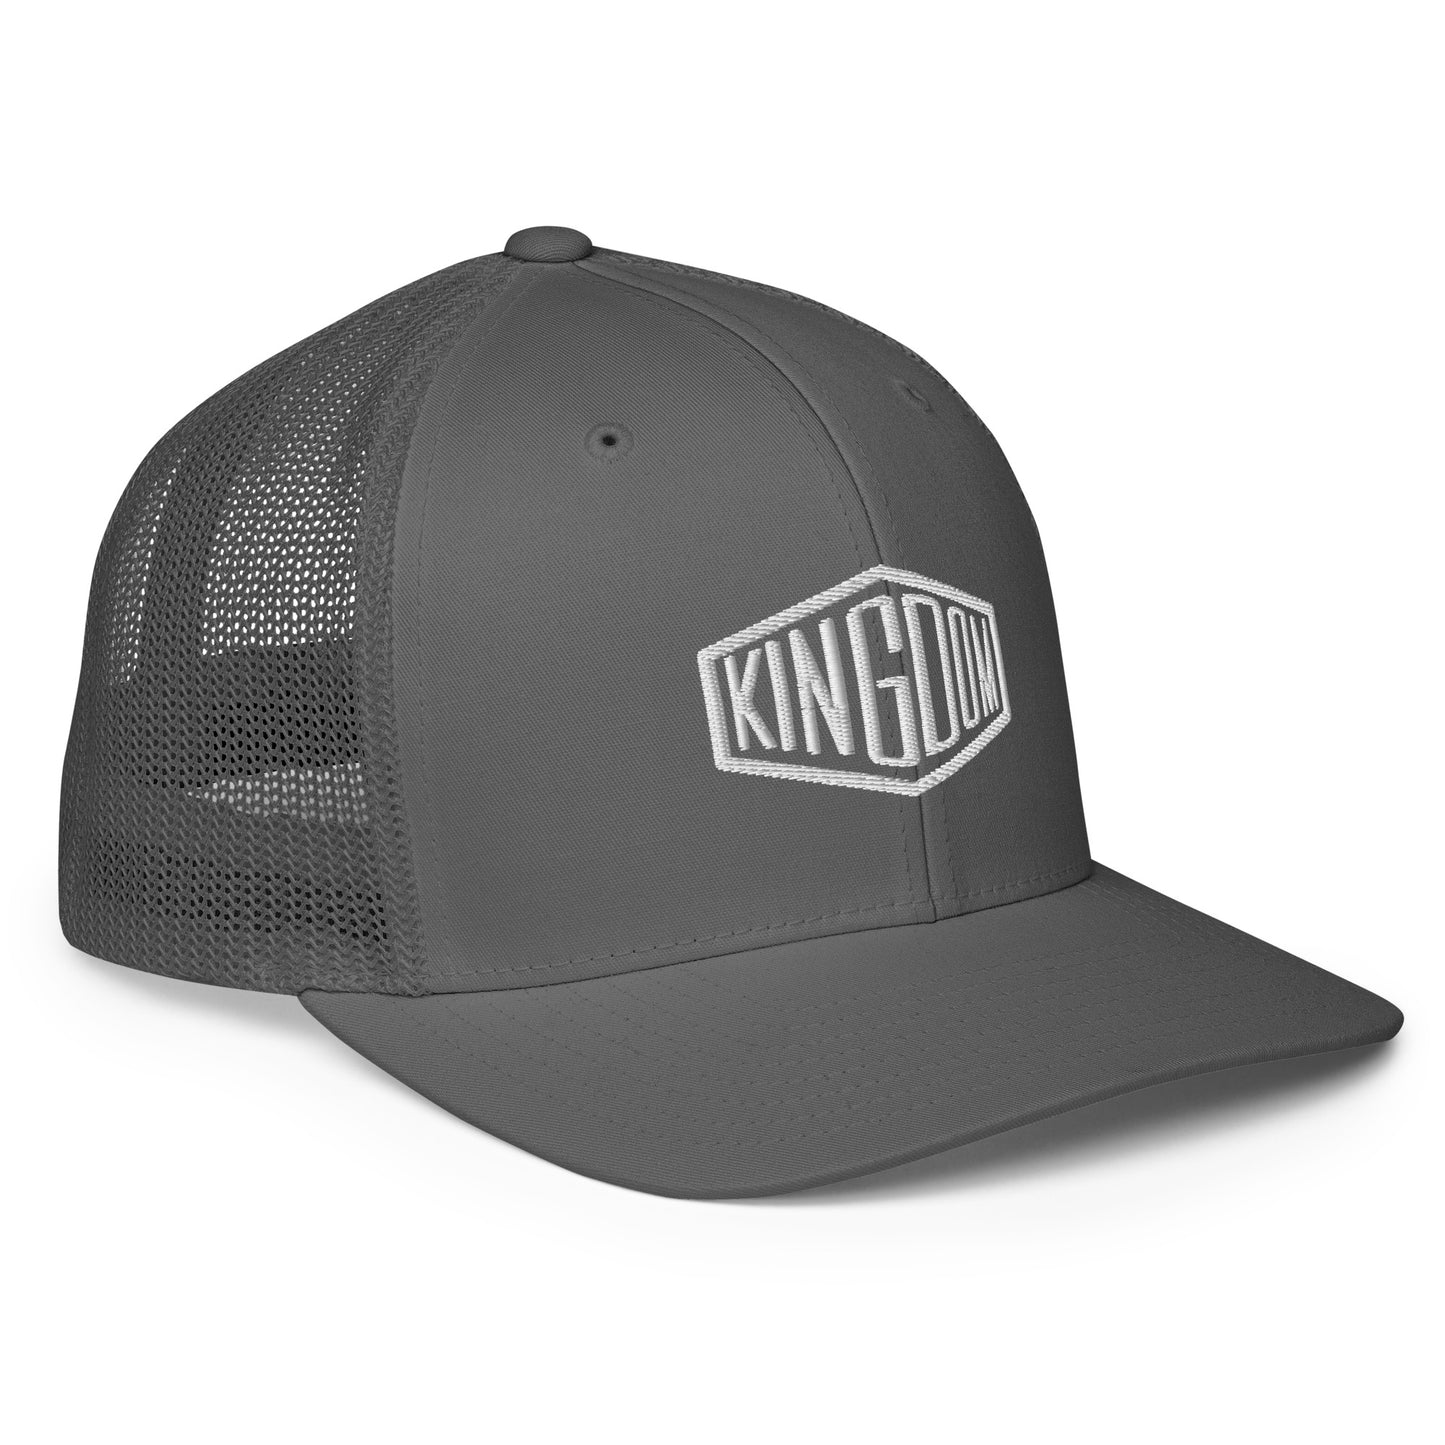 KL trucker cap